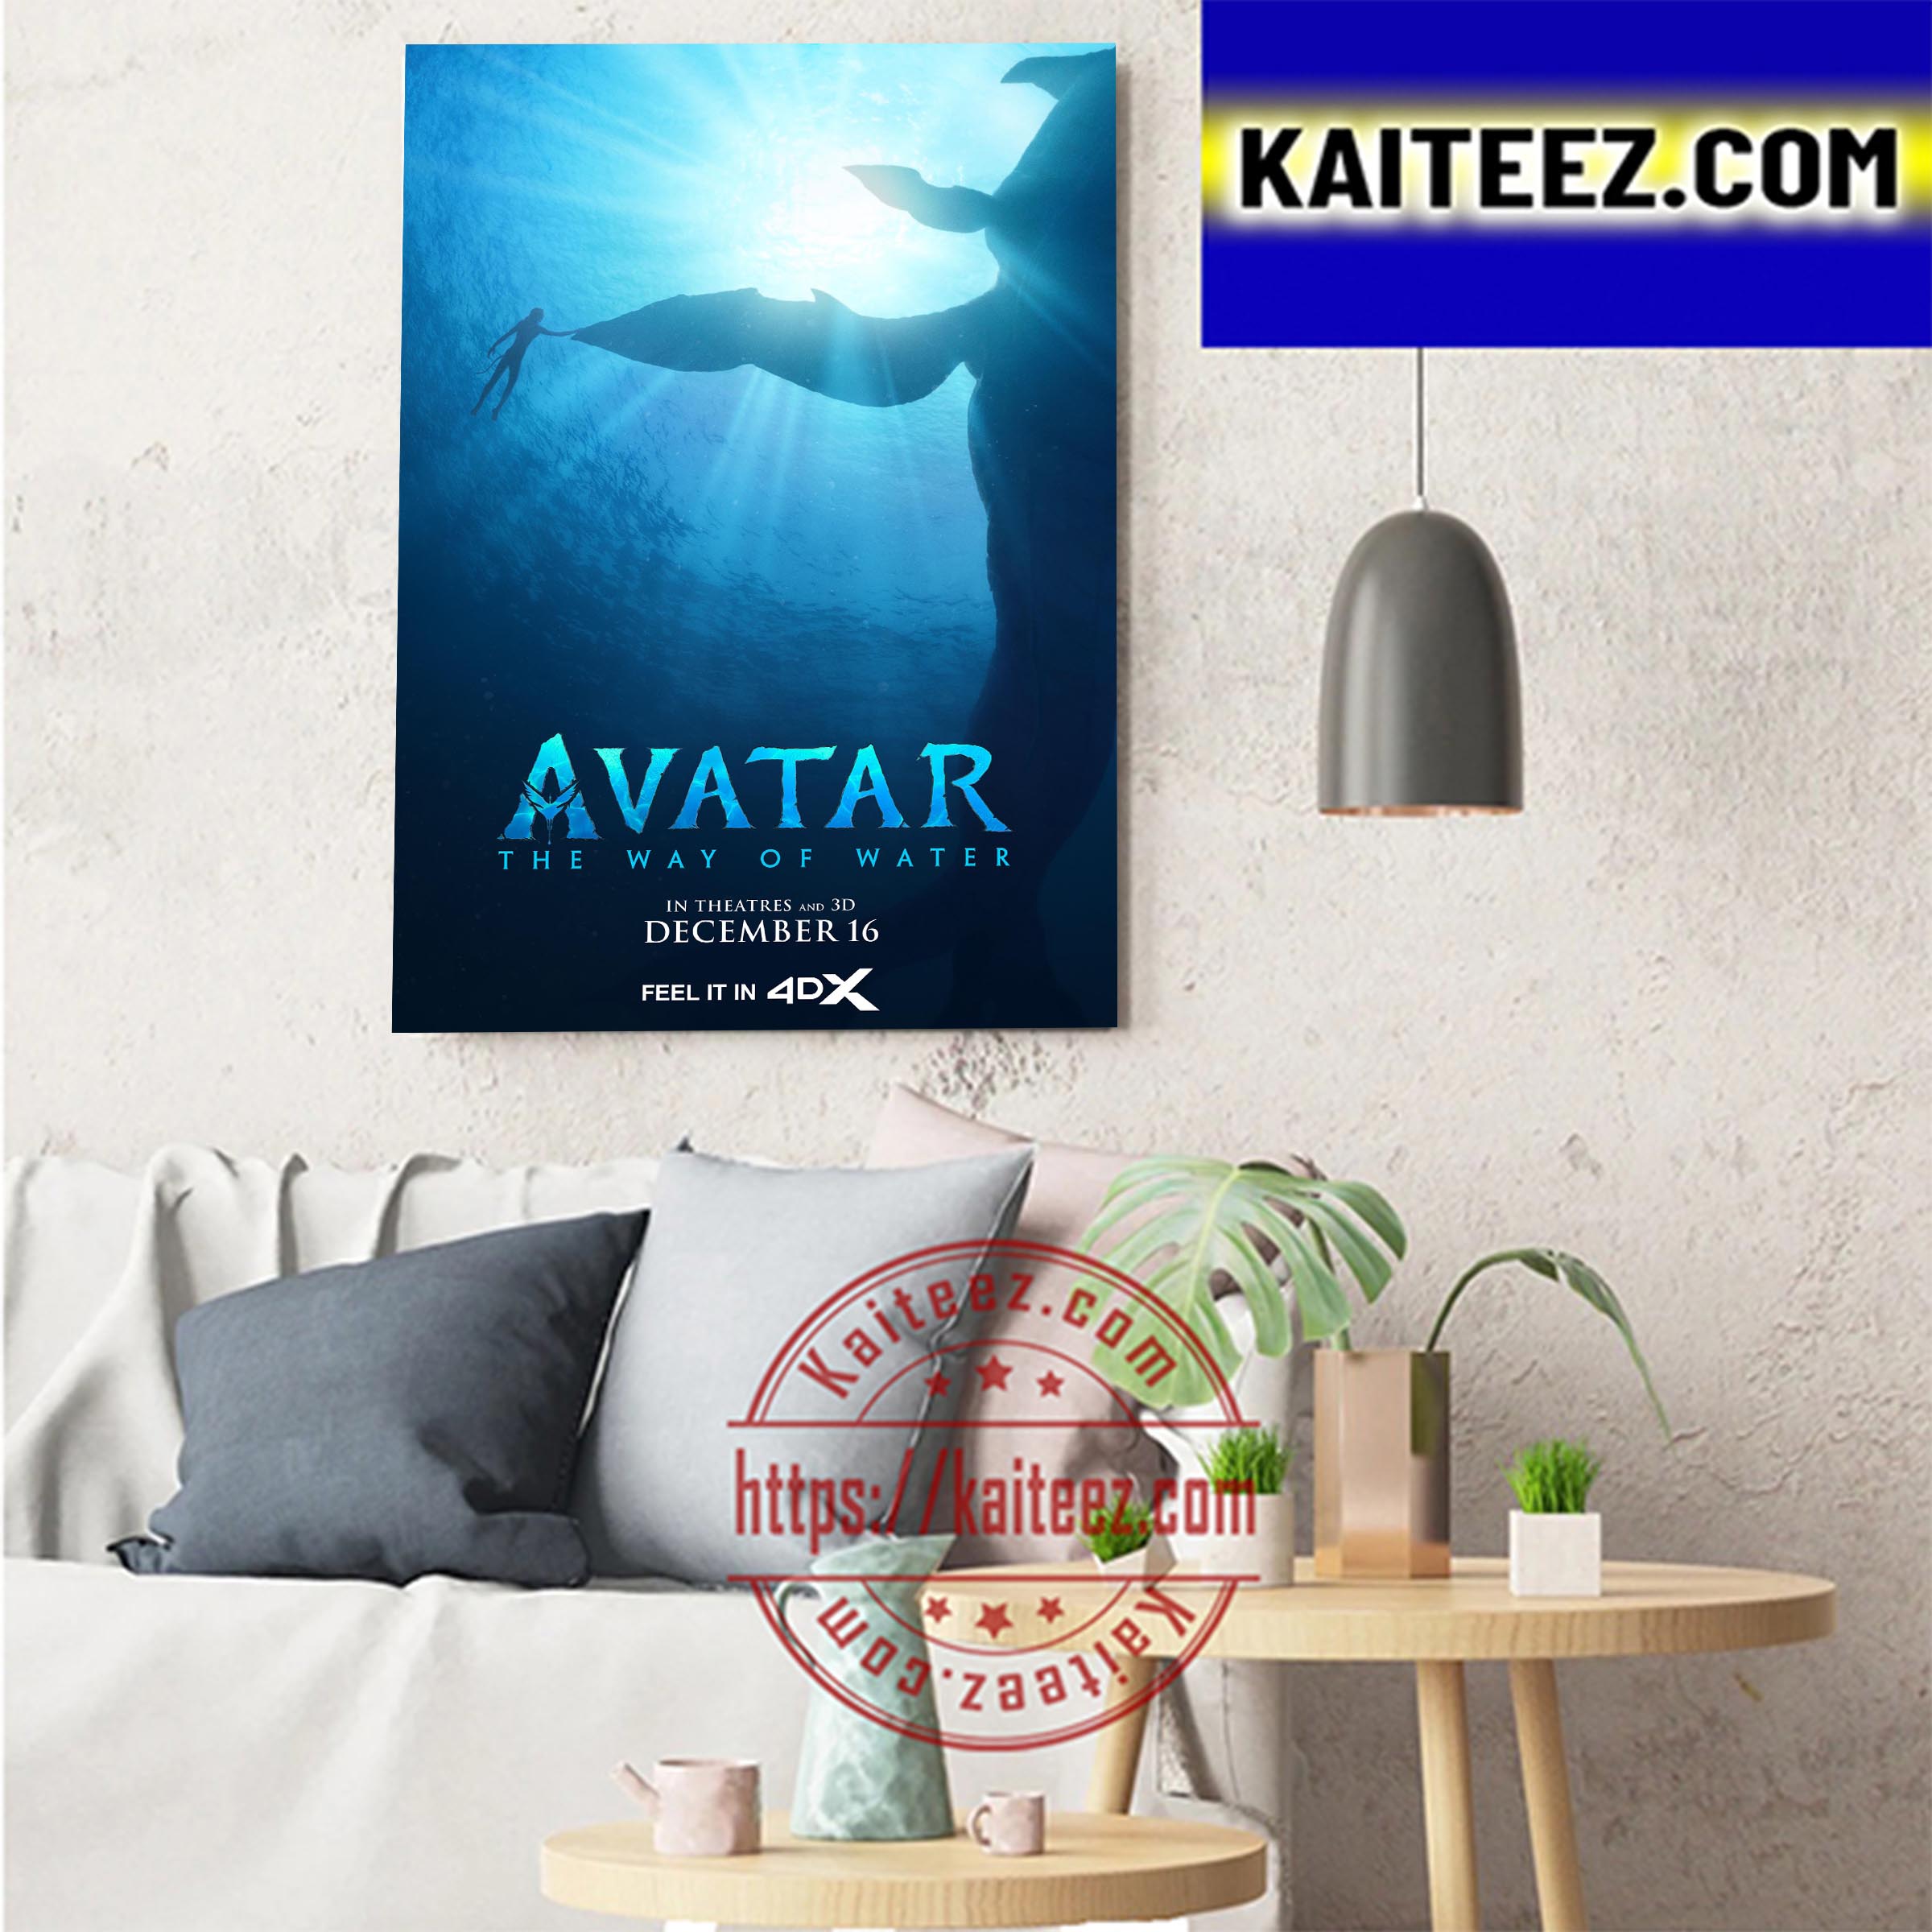 Avatar: Con Đường Nước - Poster Trang Trí Nghệ Thuật Chính Thức 4DX - Cuộc hành trình đầy kinh ngạc của bộ phim Avatar đã trở lại! Với poster trang trí nghệ thuật tuyệt đẹp, người xem sẽ được truyền cảm hứng và sự háo hức đặc biệt cho cuộc phiêu lưu đầy tình cảm và hiệu ứng 4DX hấp dẫn. Hãy đến và tận hưởng những cảm xúc tuyệt vời trong bộ phim này.